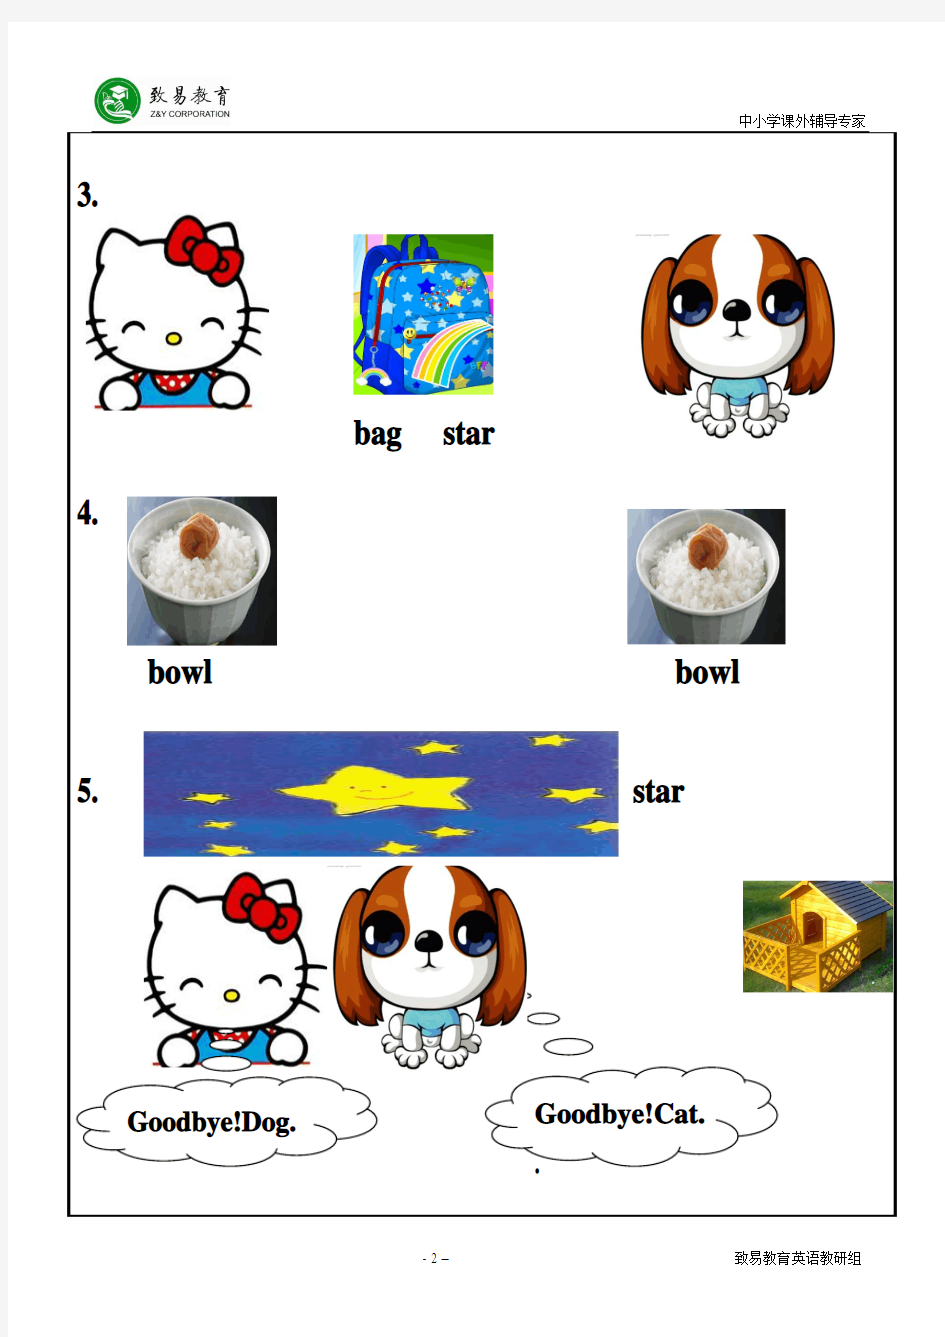 幼儿园大班英语礼貌用语,动物学习